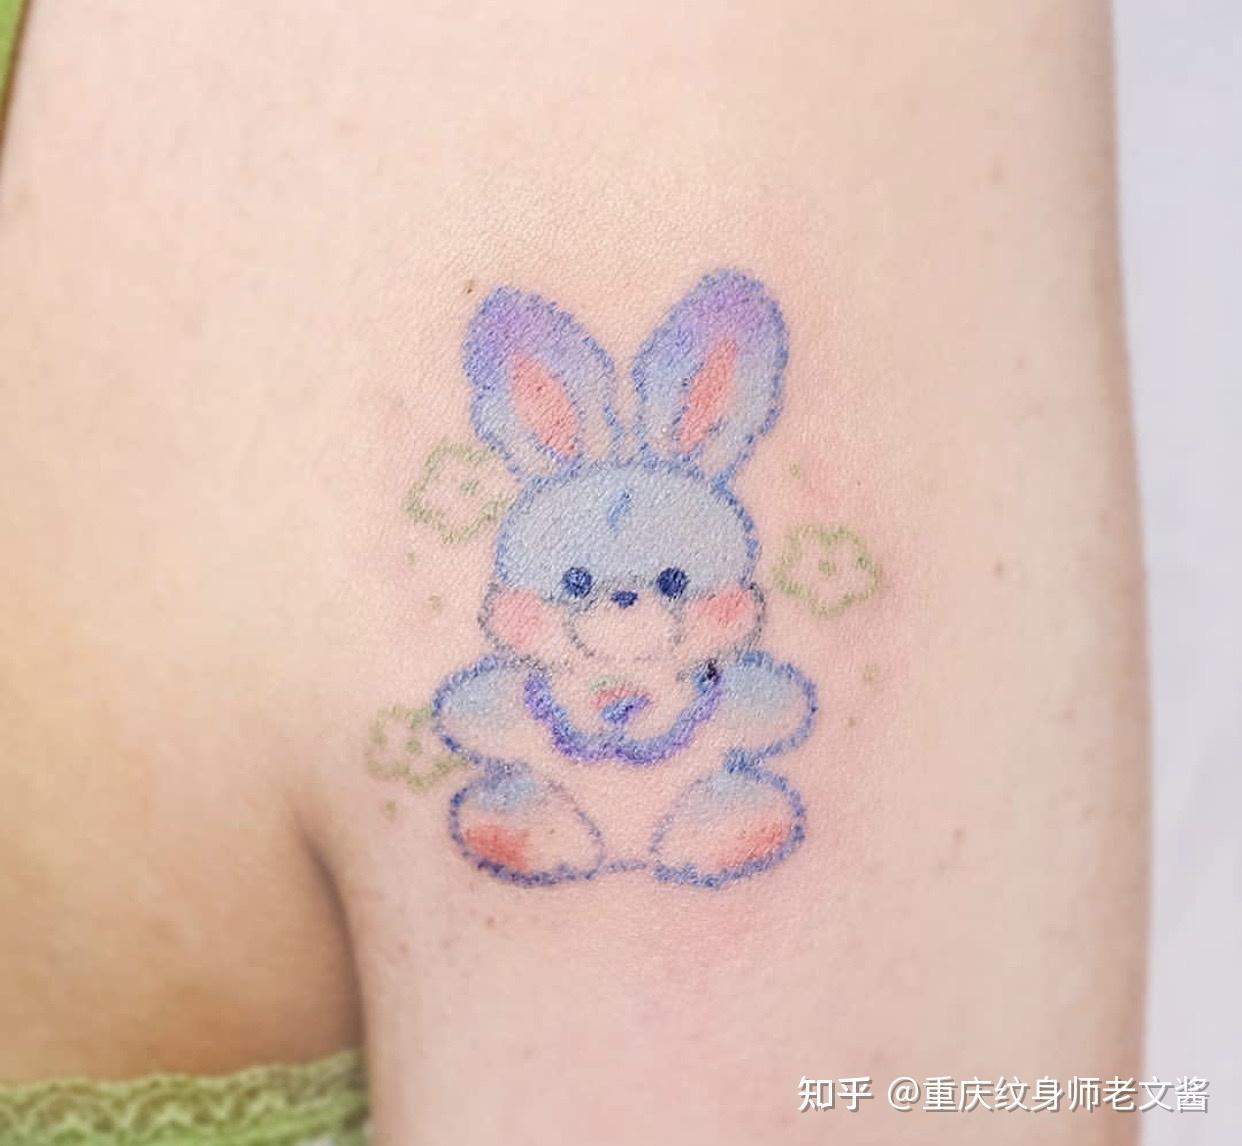 兔子纹身图案可爱-图库-五毛网